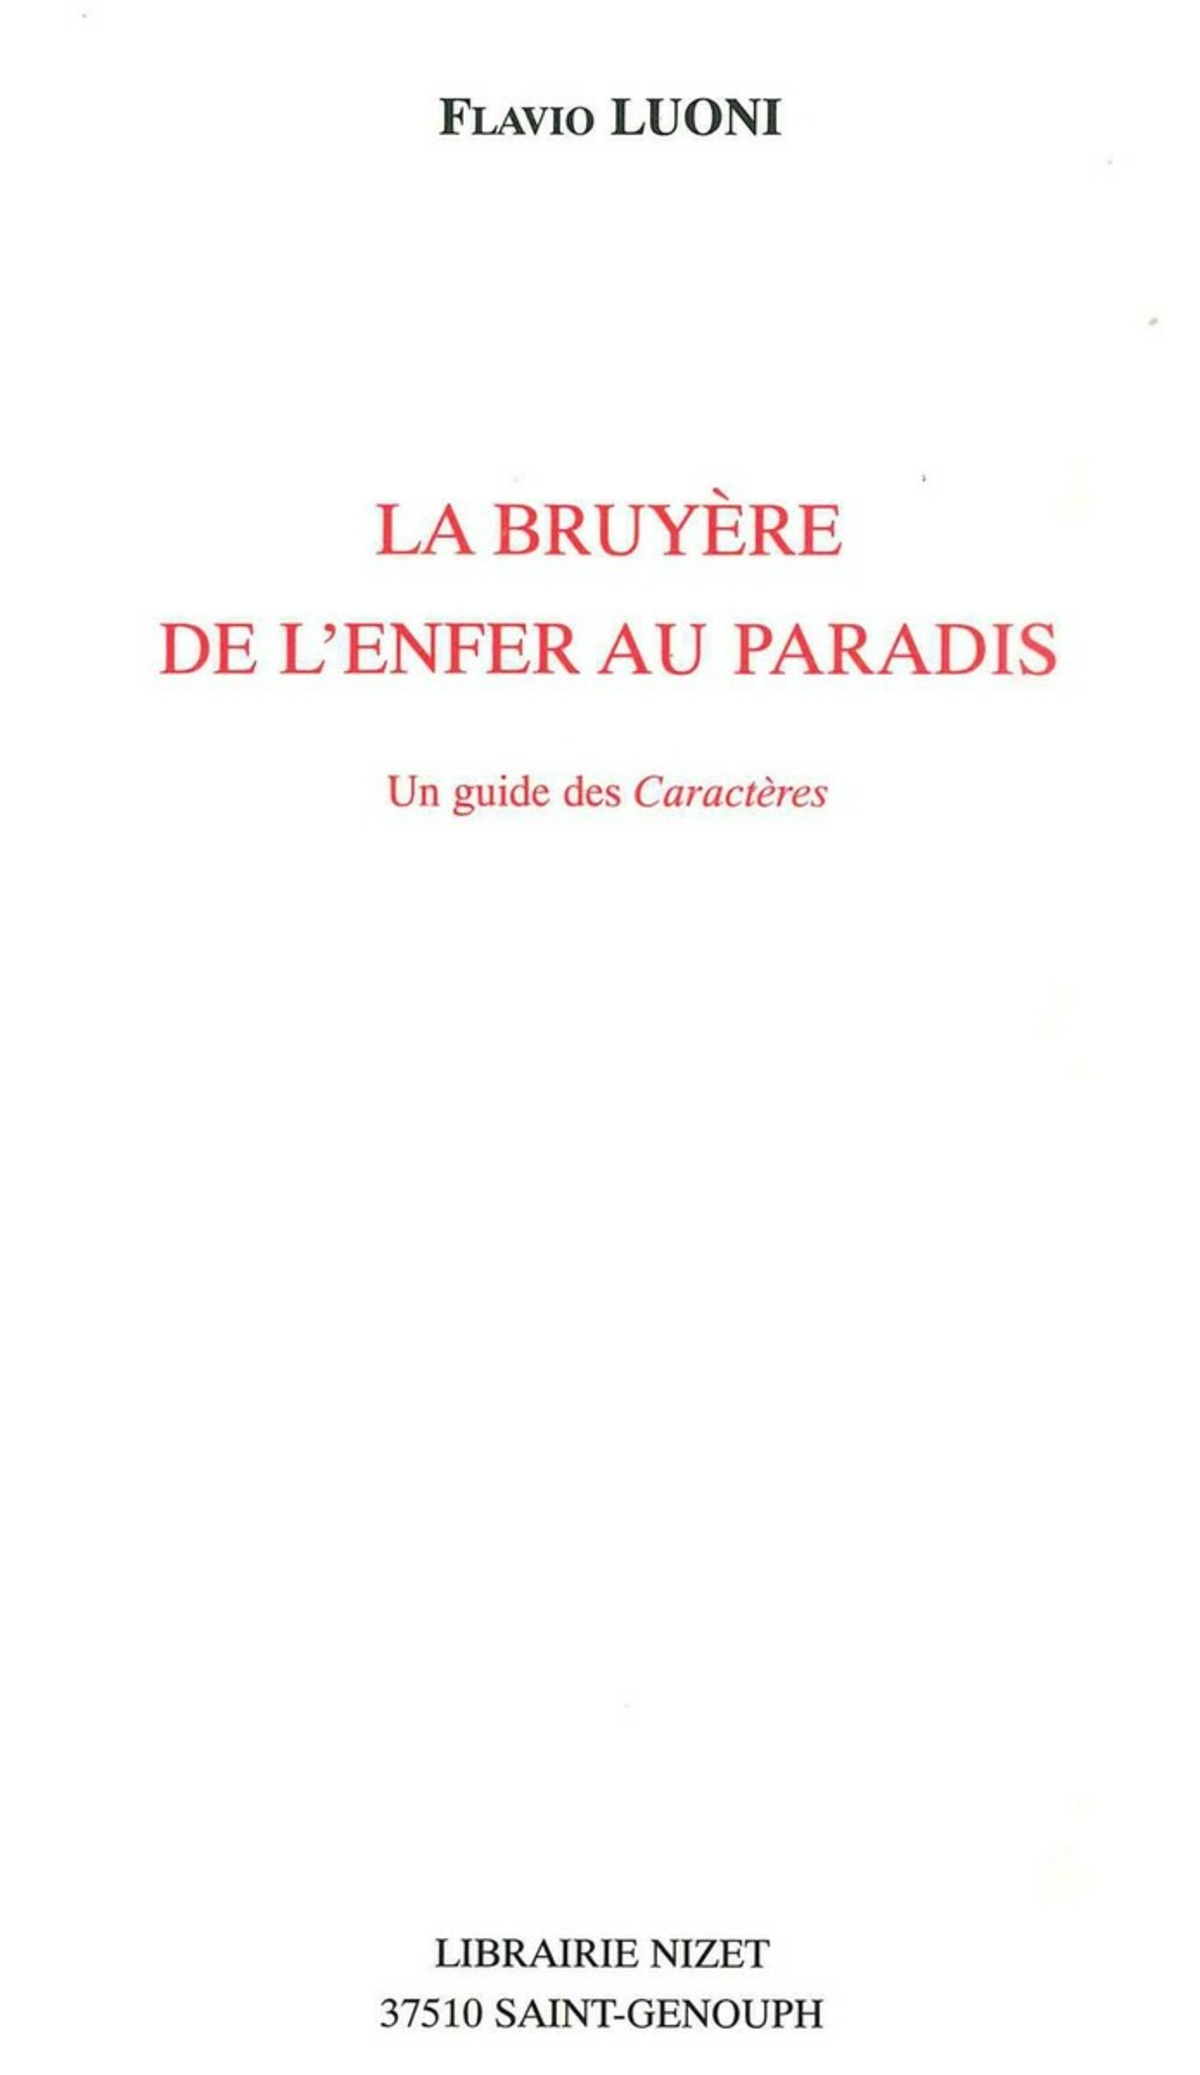 La Bruyère, de l'enfer au paradis